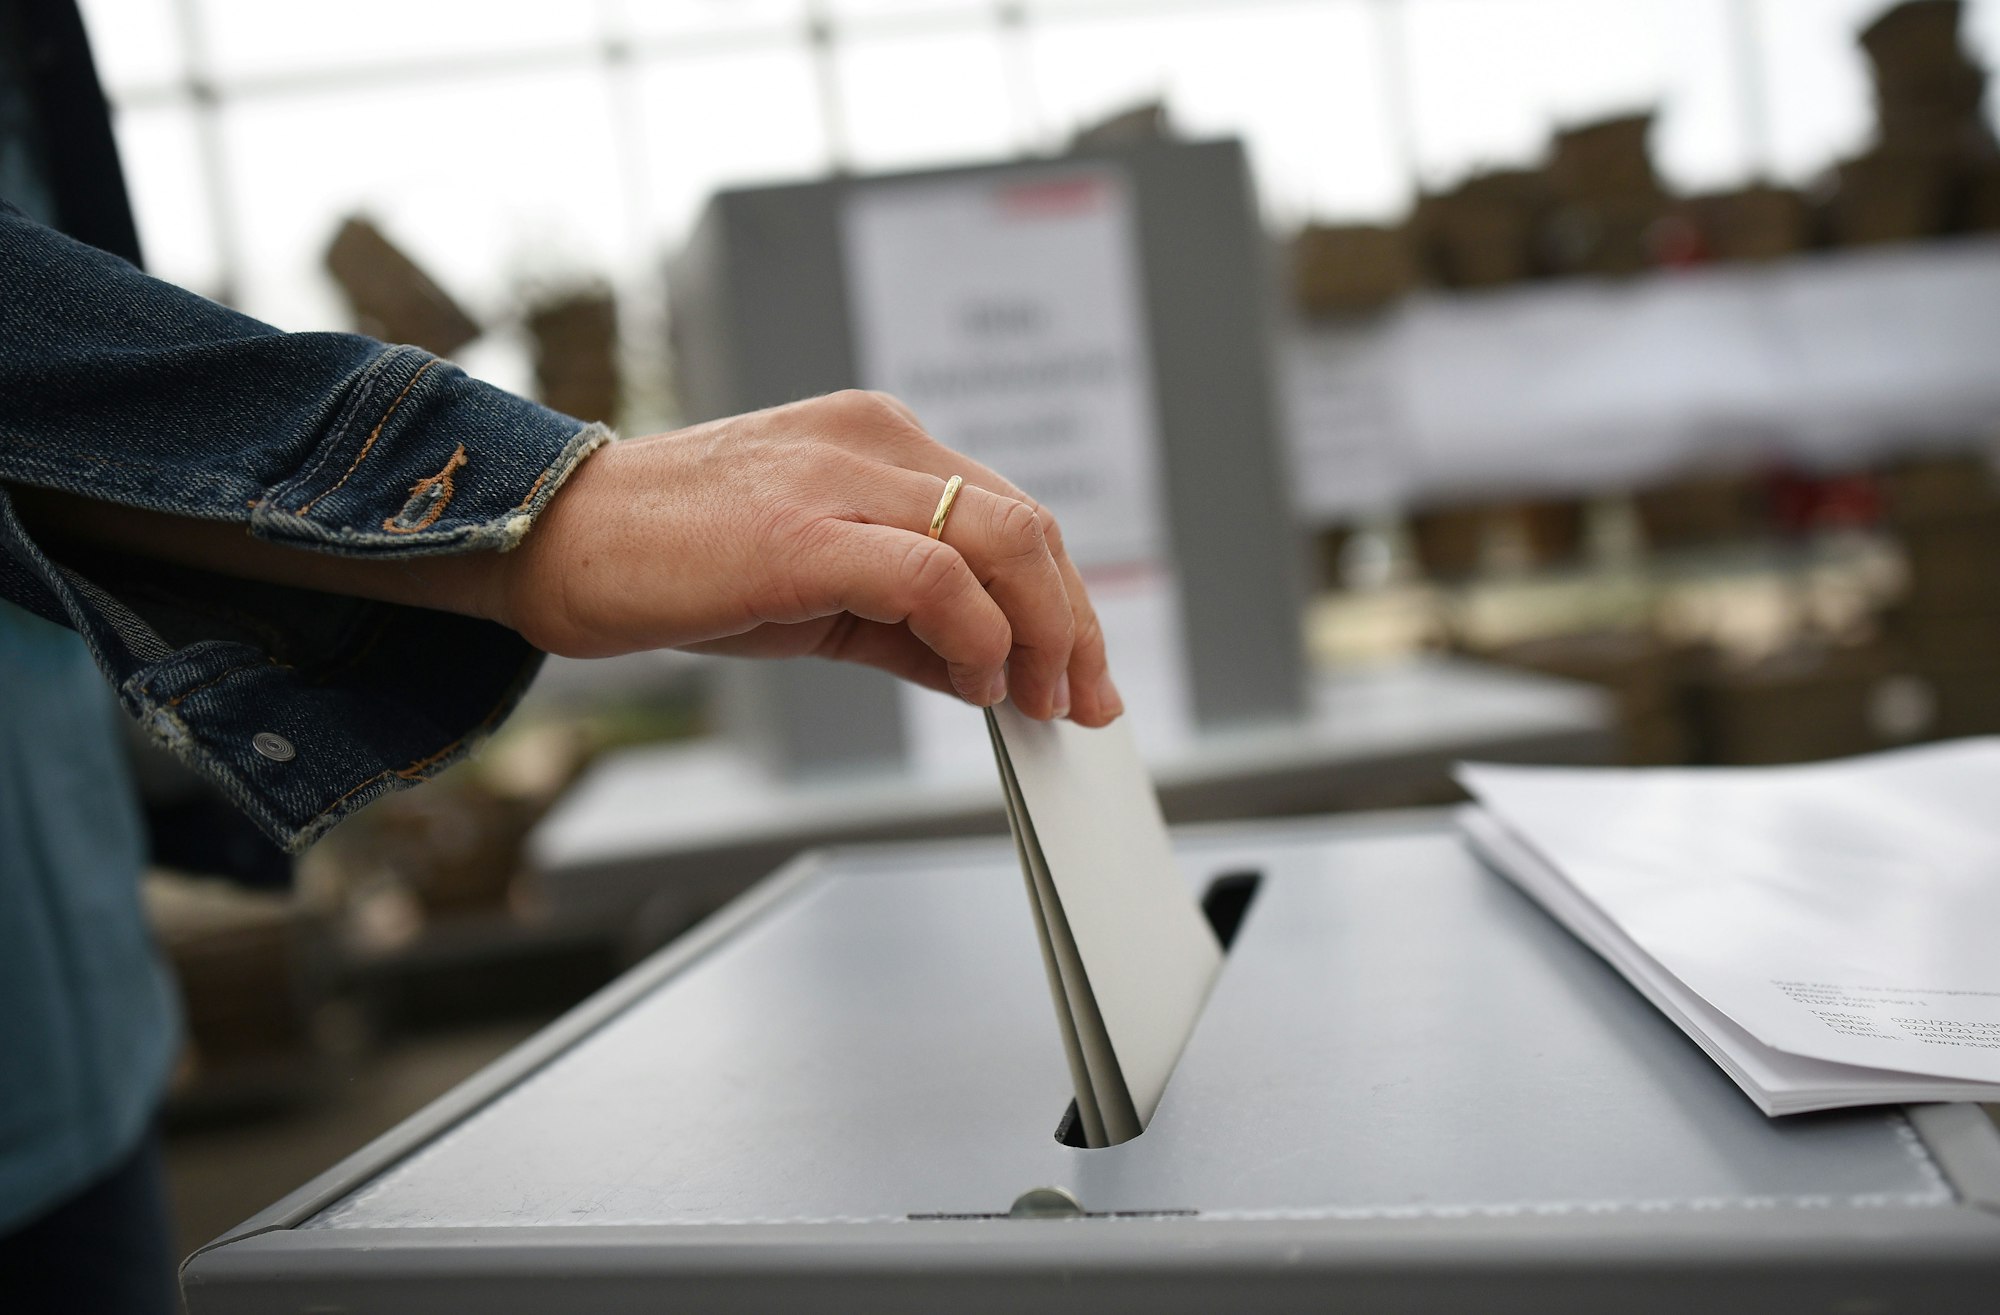 Die diesjährige Bundestagswahl soll in den Flutgebieten in Zelten, Bussen oder Containern stattfinden können. Eine Frau wirft ihren Wahlzettel in eine Urne, die sich im Gewächshaus einer Gärtnerei befindet.